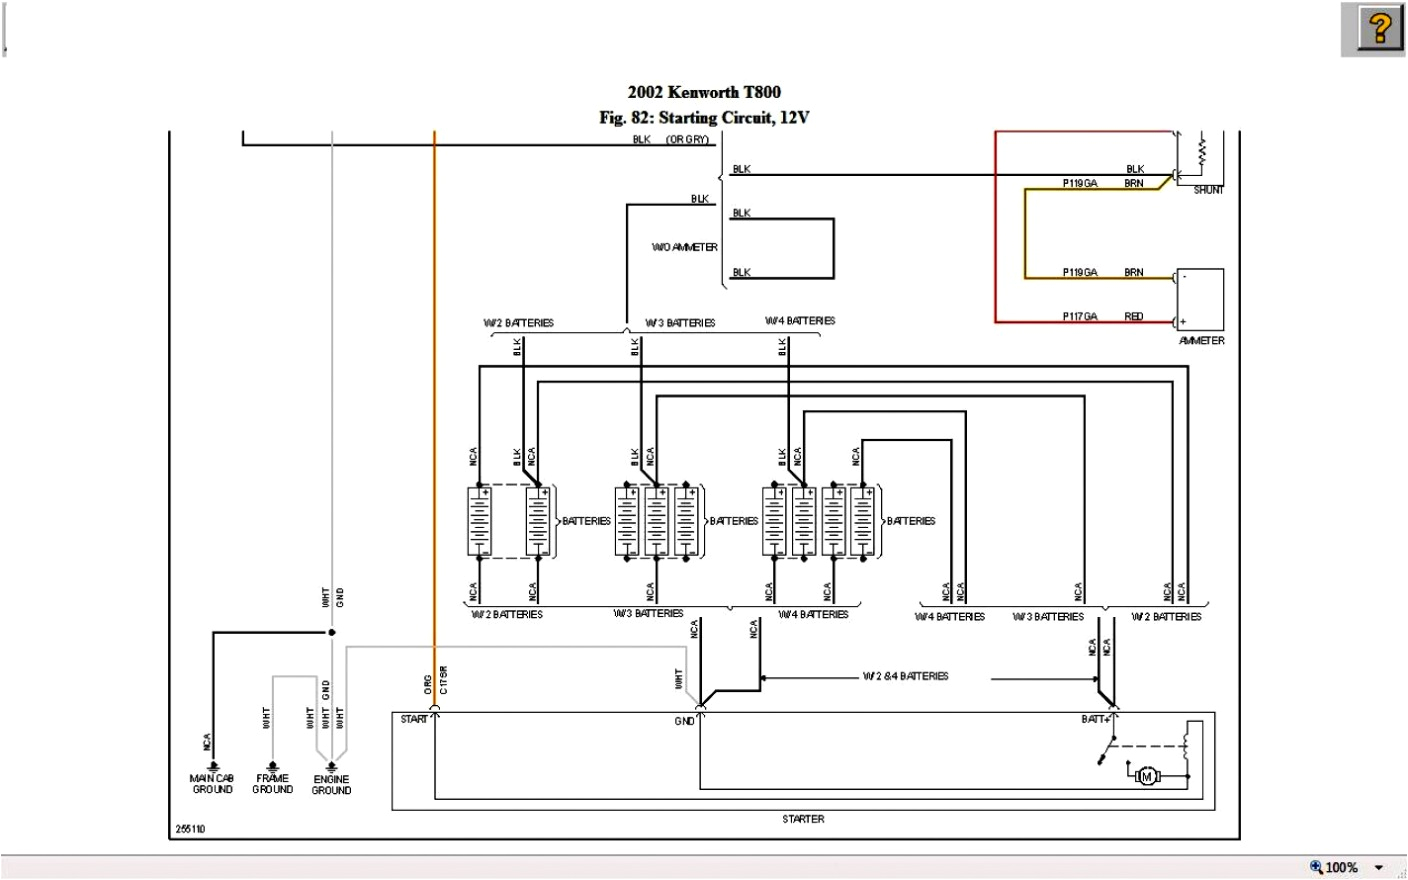 2002 kenworth t800 wiring diagram schematic wiring diagram 2002 kenworth t800 wiring diagram schematic wiring diagram